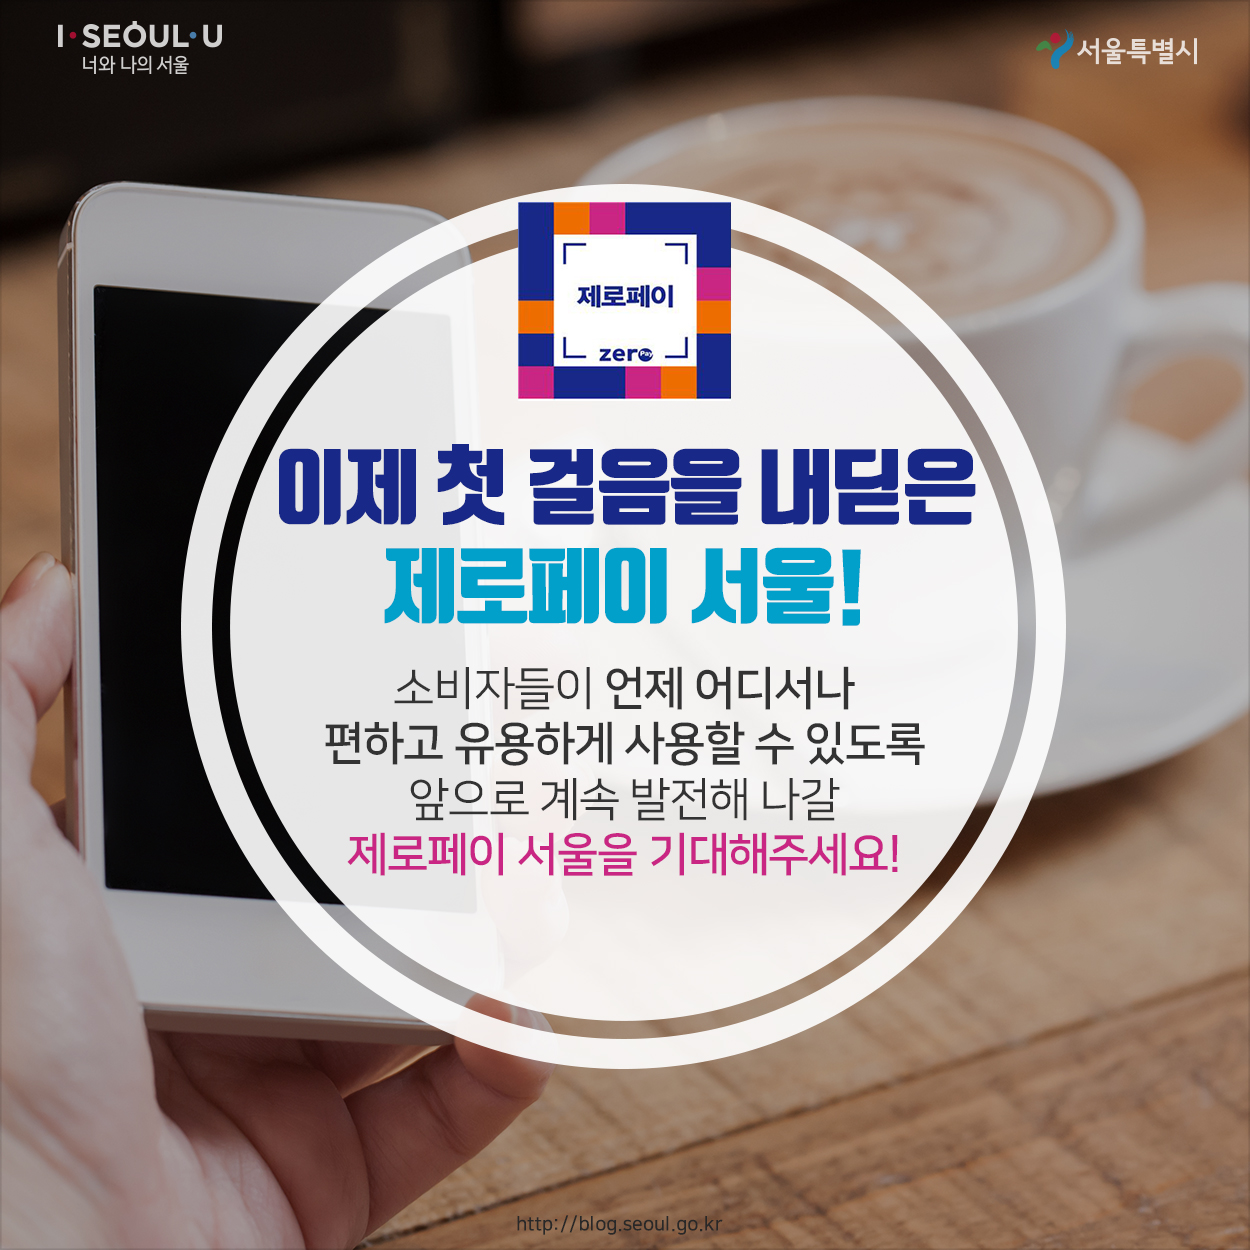 이제 첫 걸음을 내딛은 제로페이 서울! 소비자들이 언제 어디서나 편하고 유용하게 사용할 수 있도록 앞으로 계속 발전해 나갈 제로페이 서울을 기대해주세요!